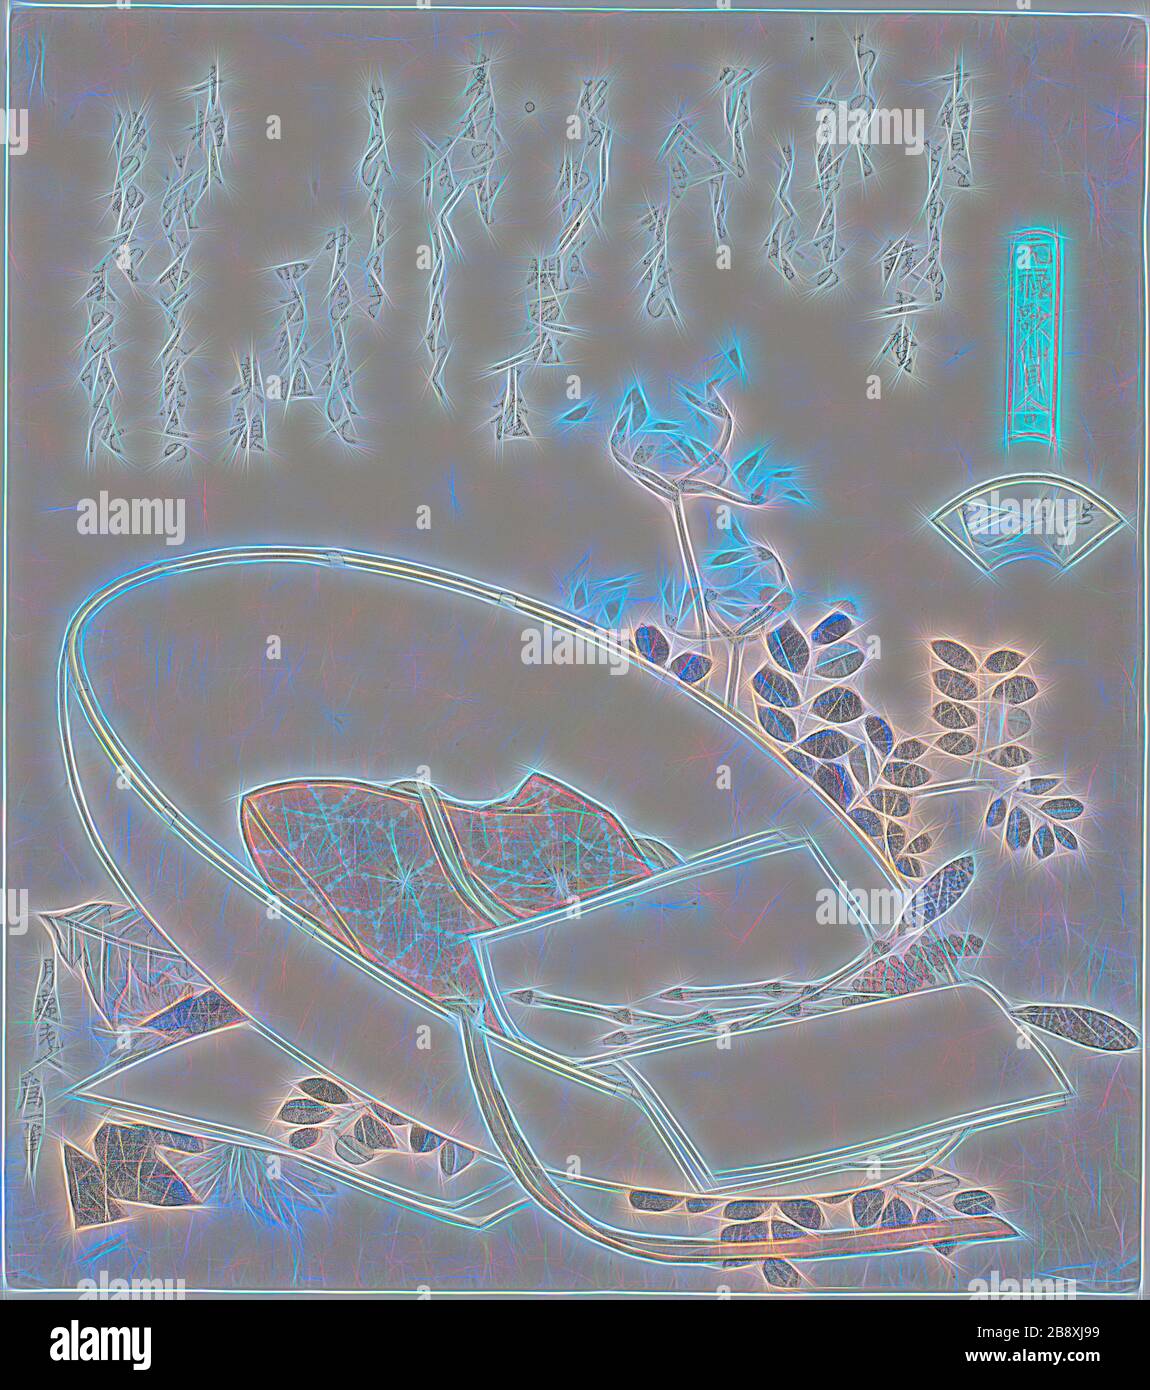 Freshly-Picked Flowers in a Traveler's hat, Illustration for the Thousand-Grases Shell (Chigusagai), from the Series A Matching Game with Genroku-period Poem Shells (Genroku kasen kai Awase), 181, Katsushika Hokusai ?? ??, Japanisch, 170-1849, Japan, Farbholzholzmuster mit Metallpigmenten, Surimono shikishiban, 20,0 x 17,9 cm, von Gibon neu vorgestellt, Design von warmfröhlichem Leuchten von Helligkeit und Lichtstrahlen. Klassische Kunst mit moderner Note neu erfunden. Fotografie, inspiriert vom Futurismus, die dynamische Energie moderner Technologie, Bewegung, Geschwindigkeit und Kultur revolutionieren. Stockfoto